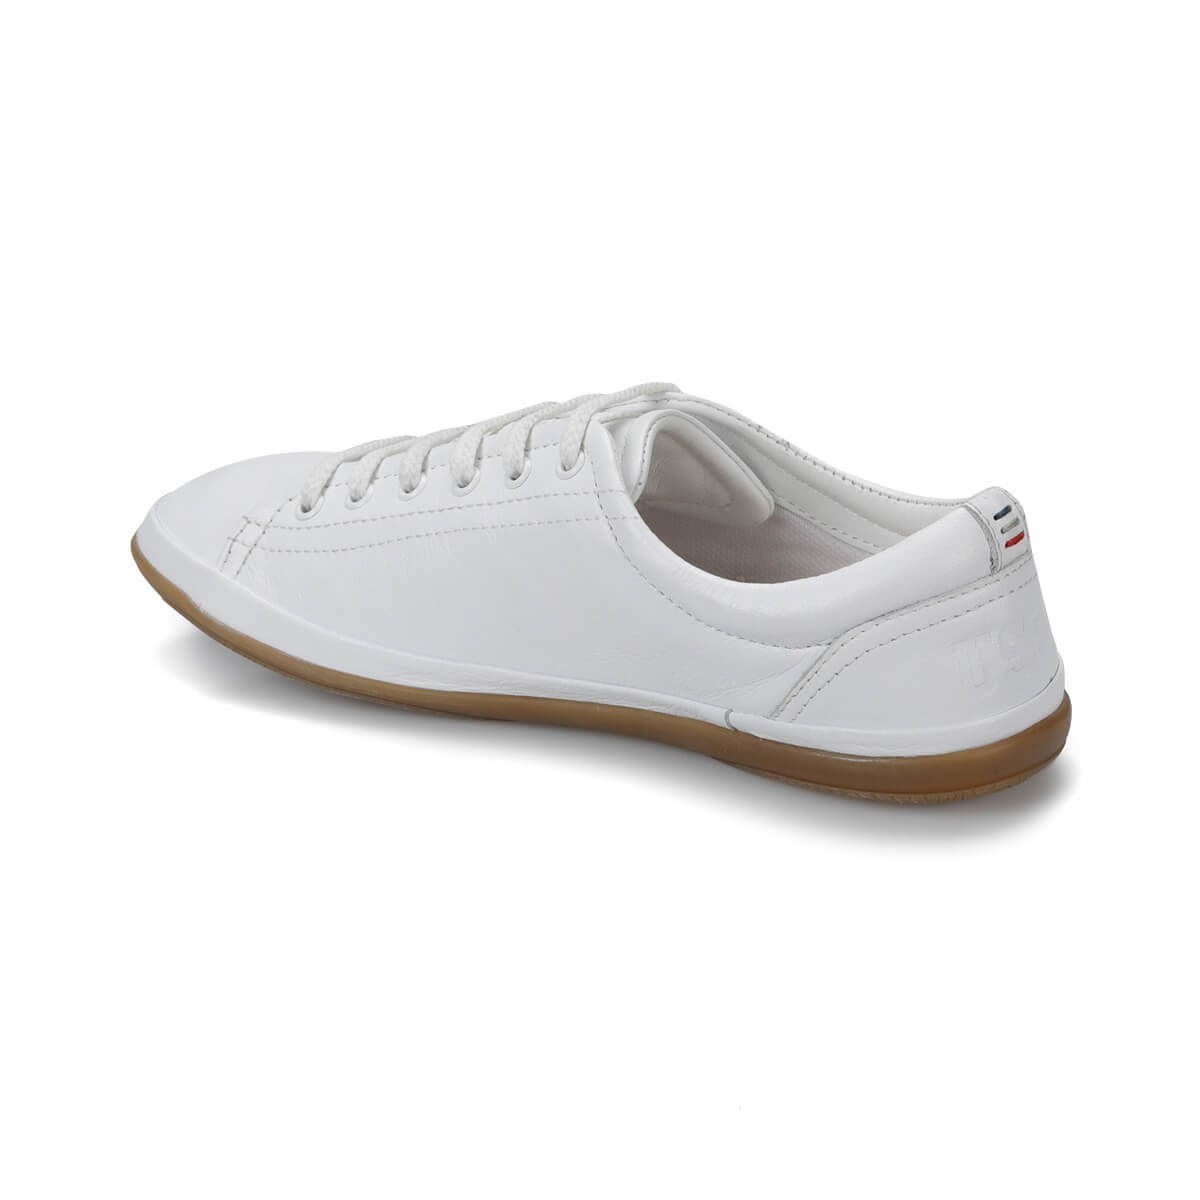 U.S Polo Kadın Ayakkabı 100249543 Beyaz